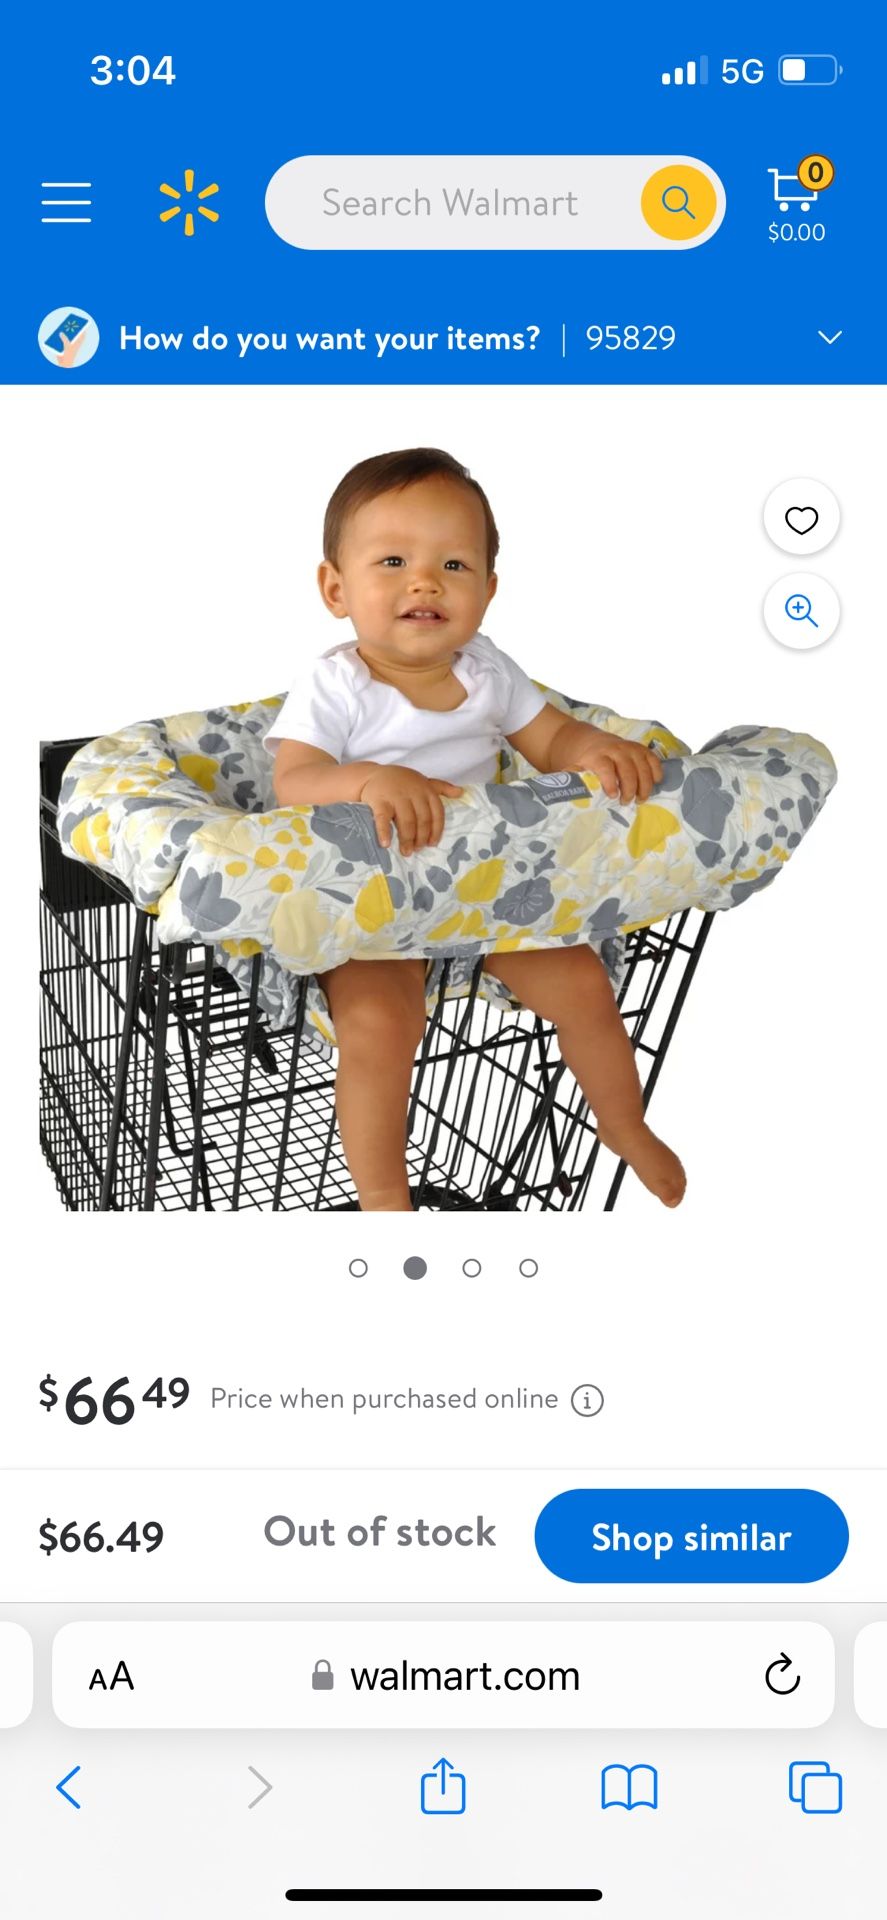 Balboa baby Shopping Cart Cover 